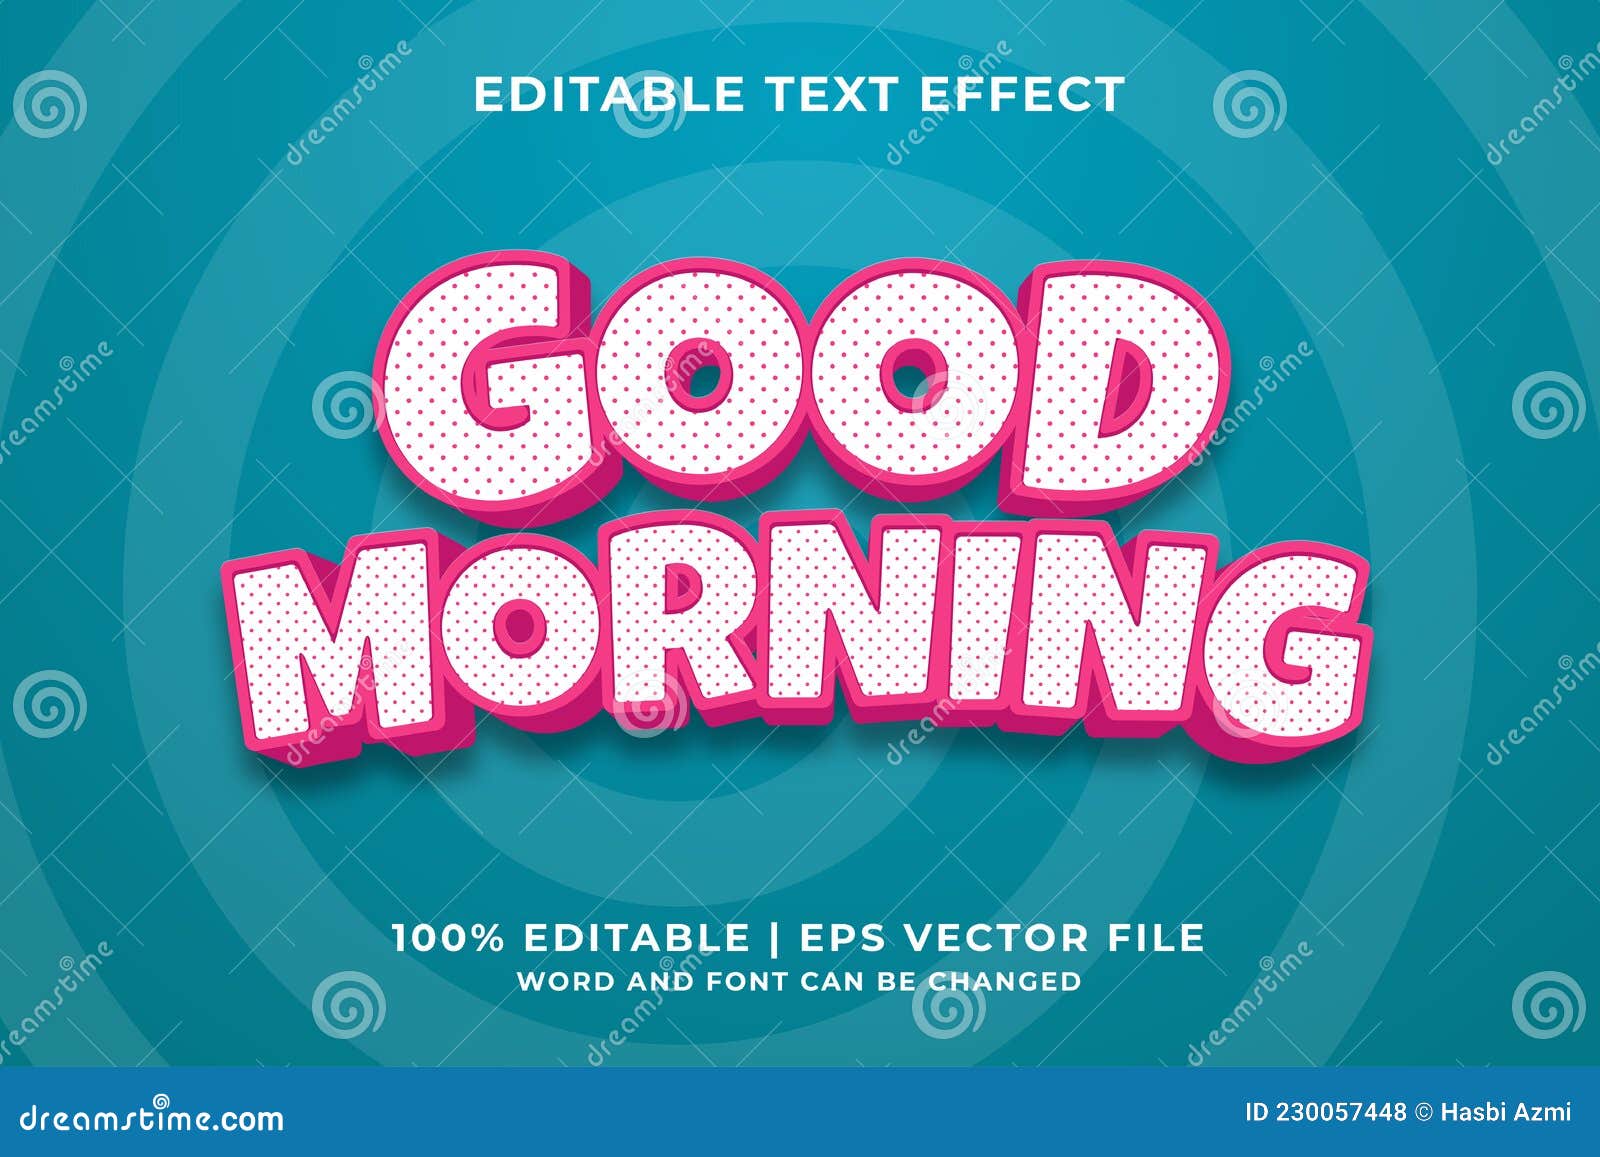 Efeito De Texto Editável Bom Dia 3d Modelo Vetor Premium Ilustração do  Vetor - Ilustração de elemento, vetor: 230057448